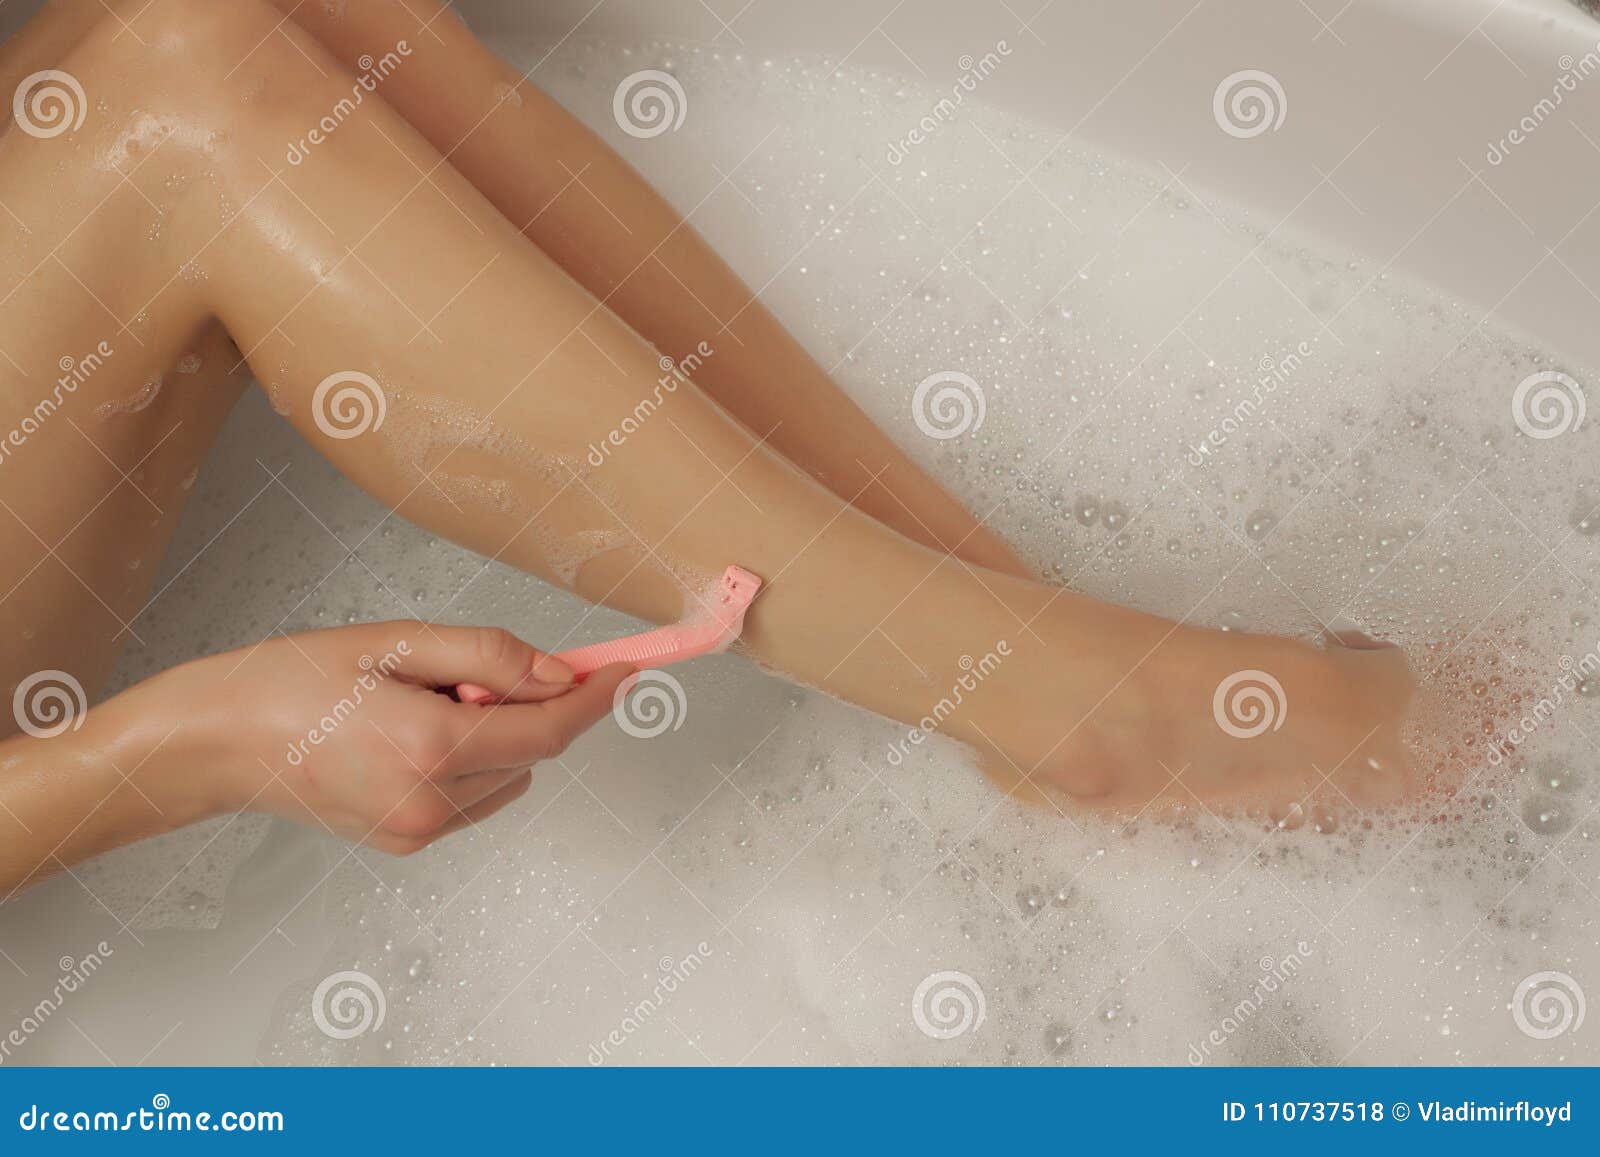 Мама бреет видео. Девушка с бритыми ногами. Девочки Бреются в ванной. Женщина бреет ноги.